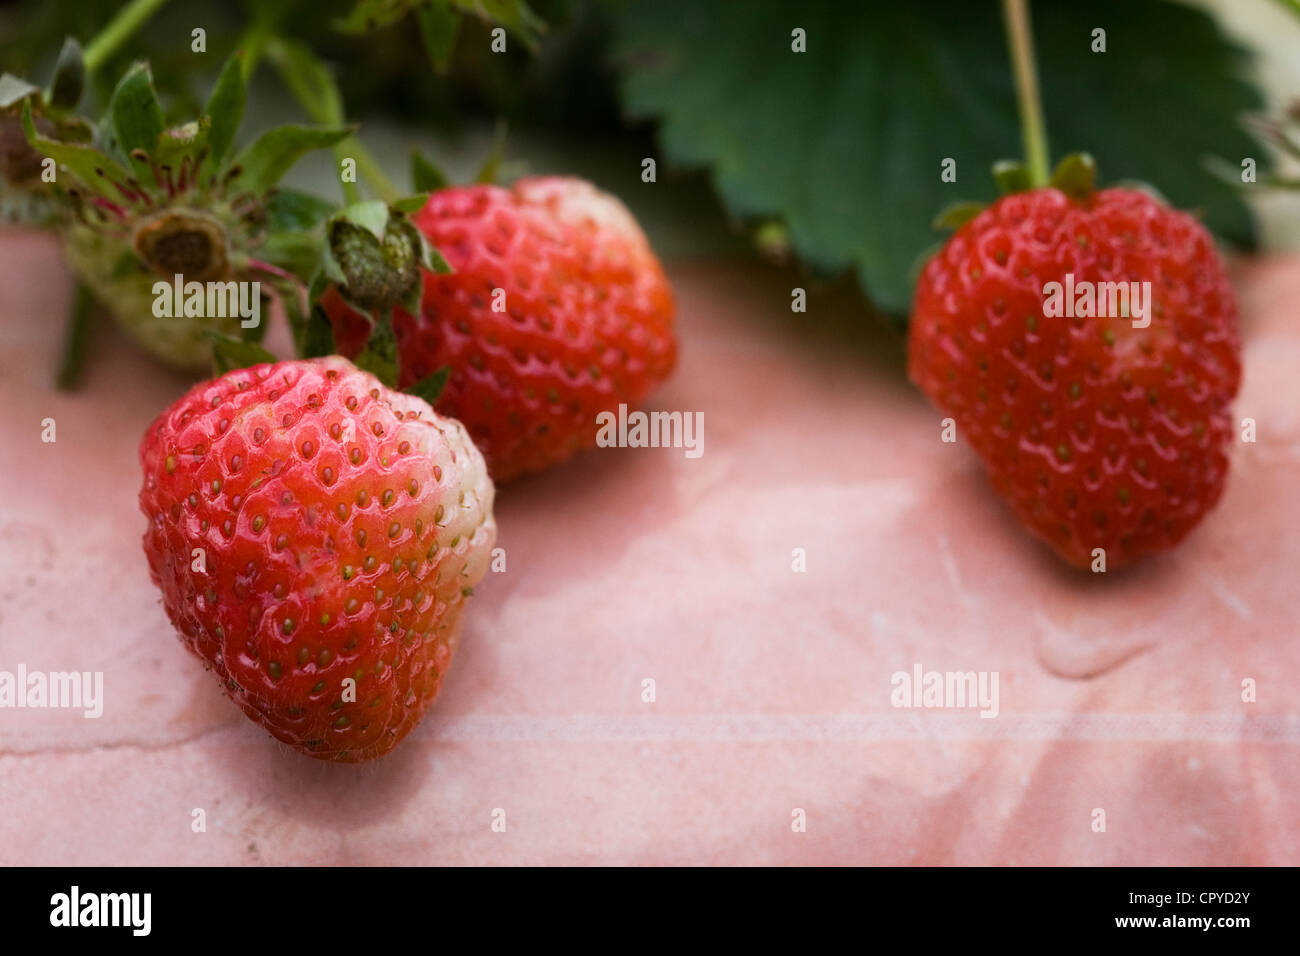 Strawberry 'Cambridge Vigour' growing in a grow bag. Stock Photo